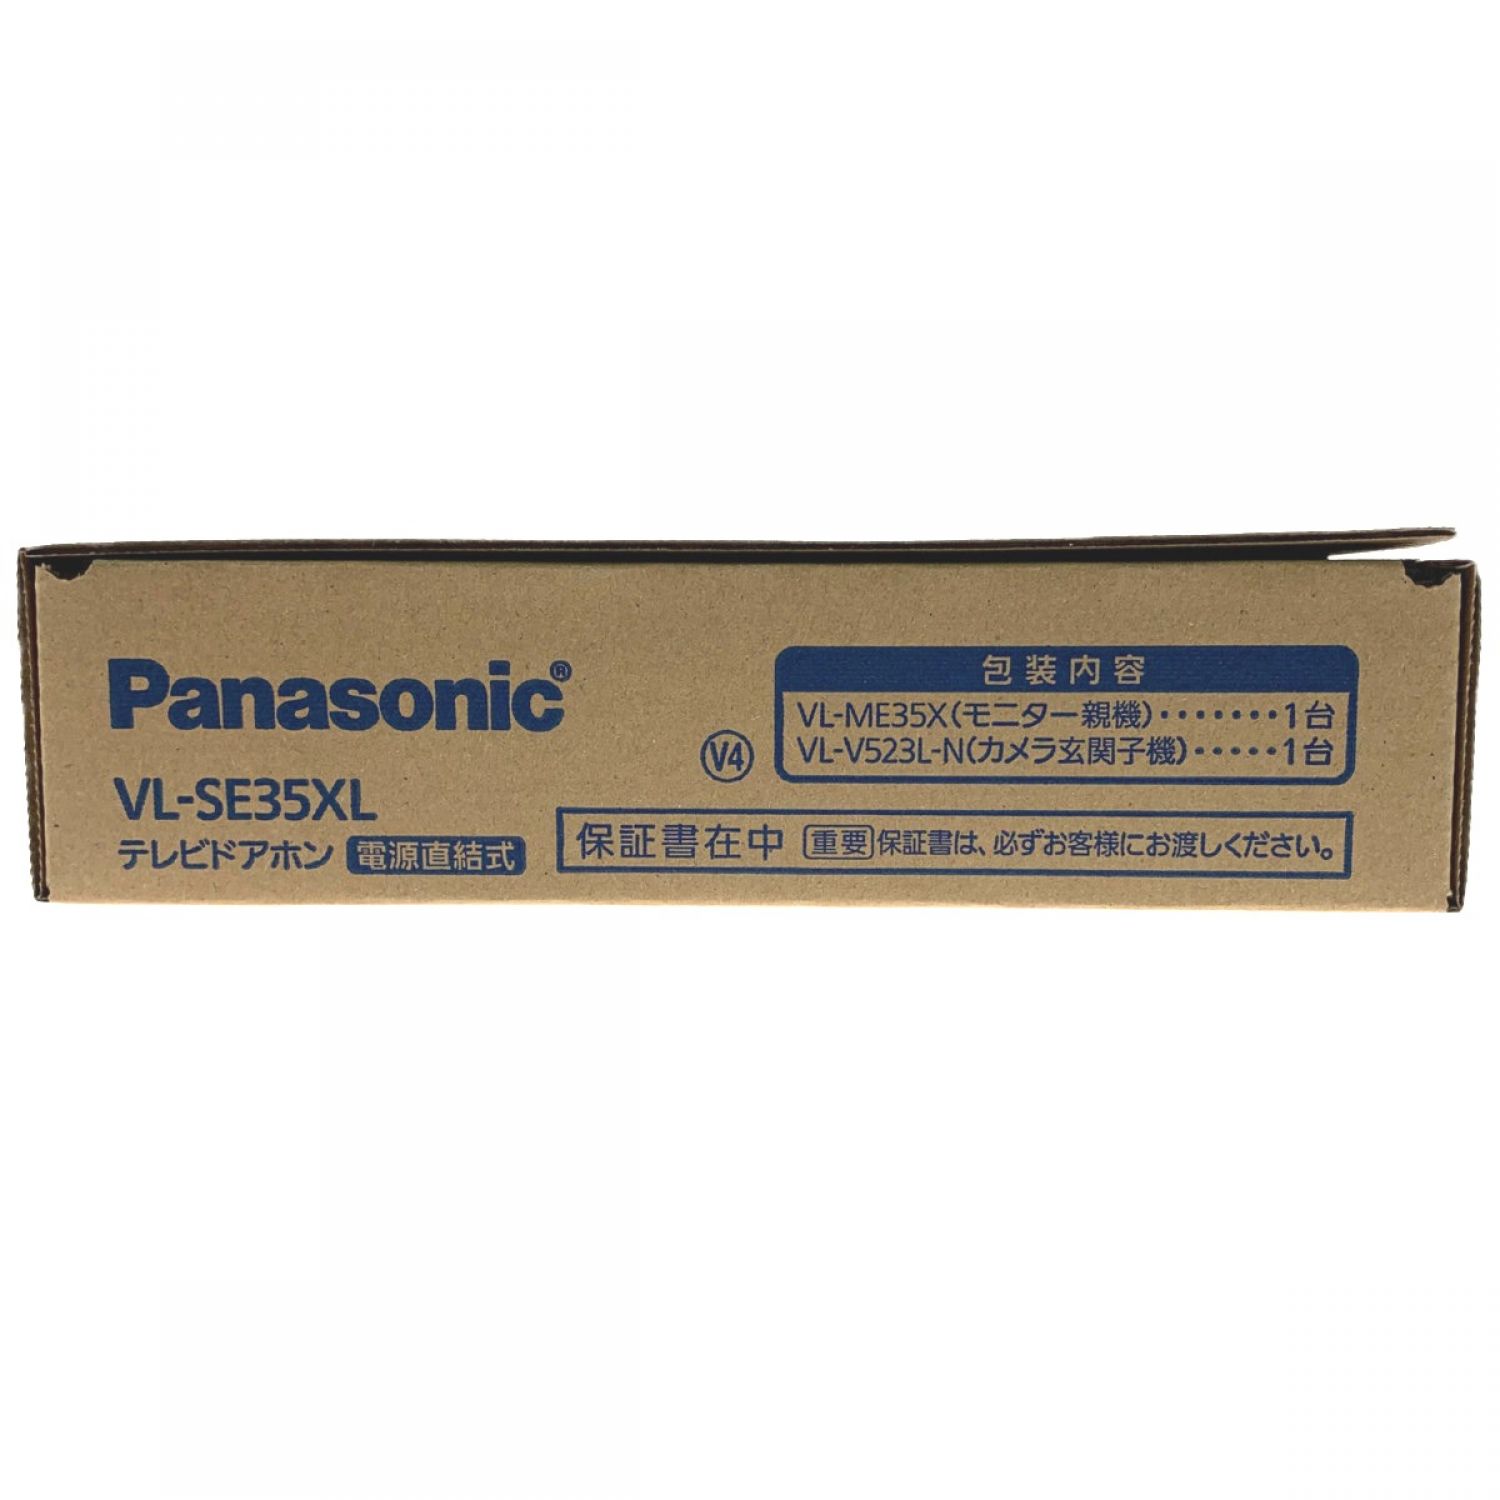 色々な Panasonic テレビドアホン 3.5型 VLSE35XL 親機のみ